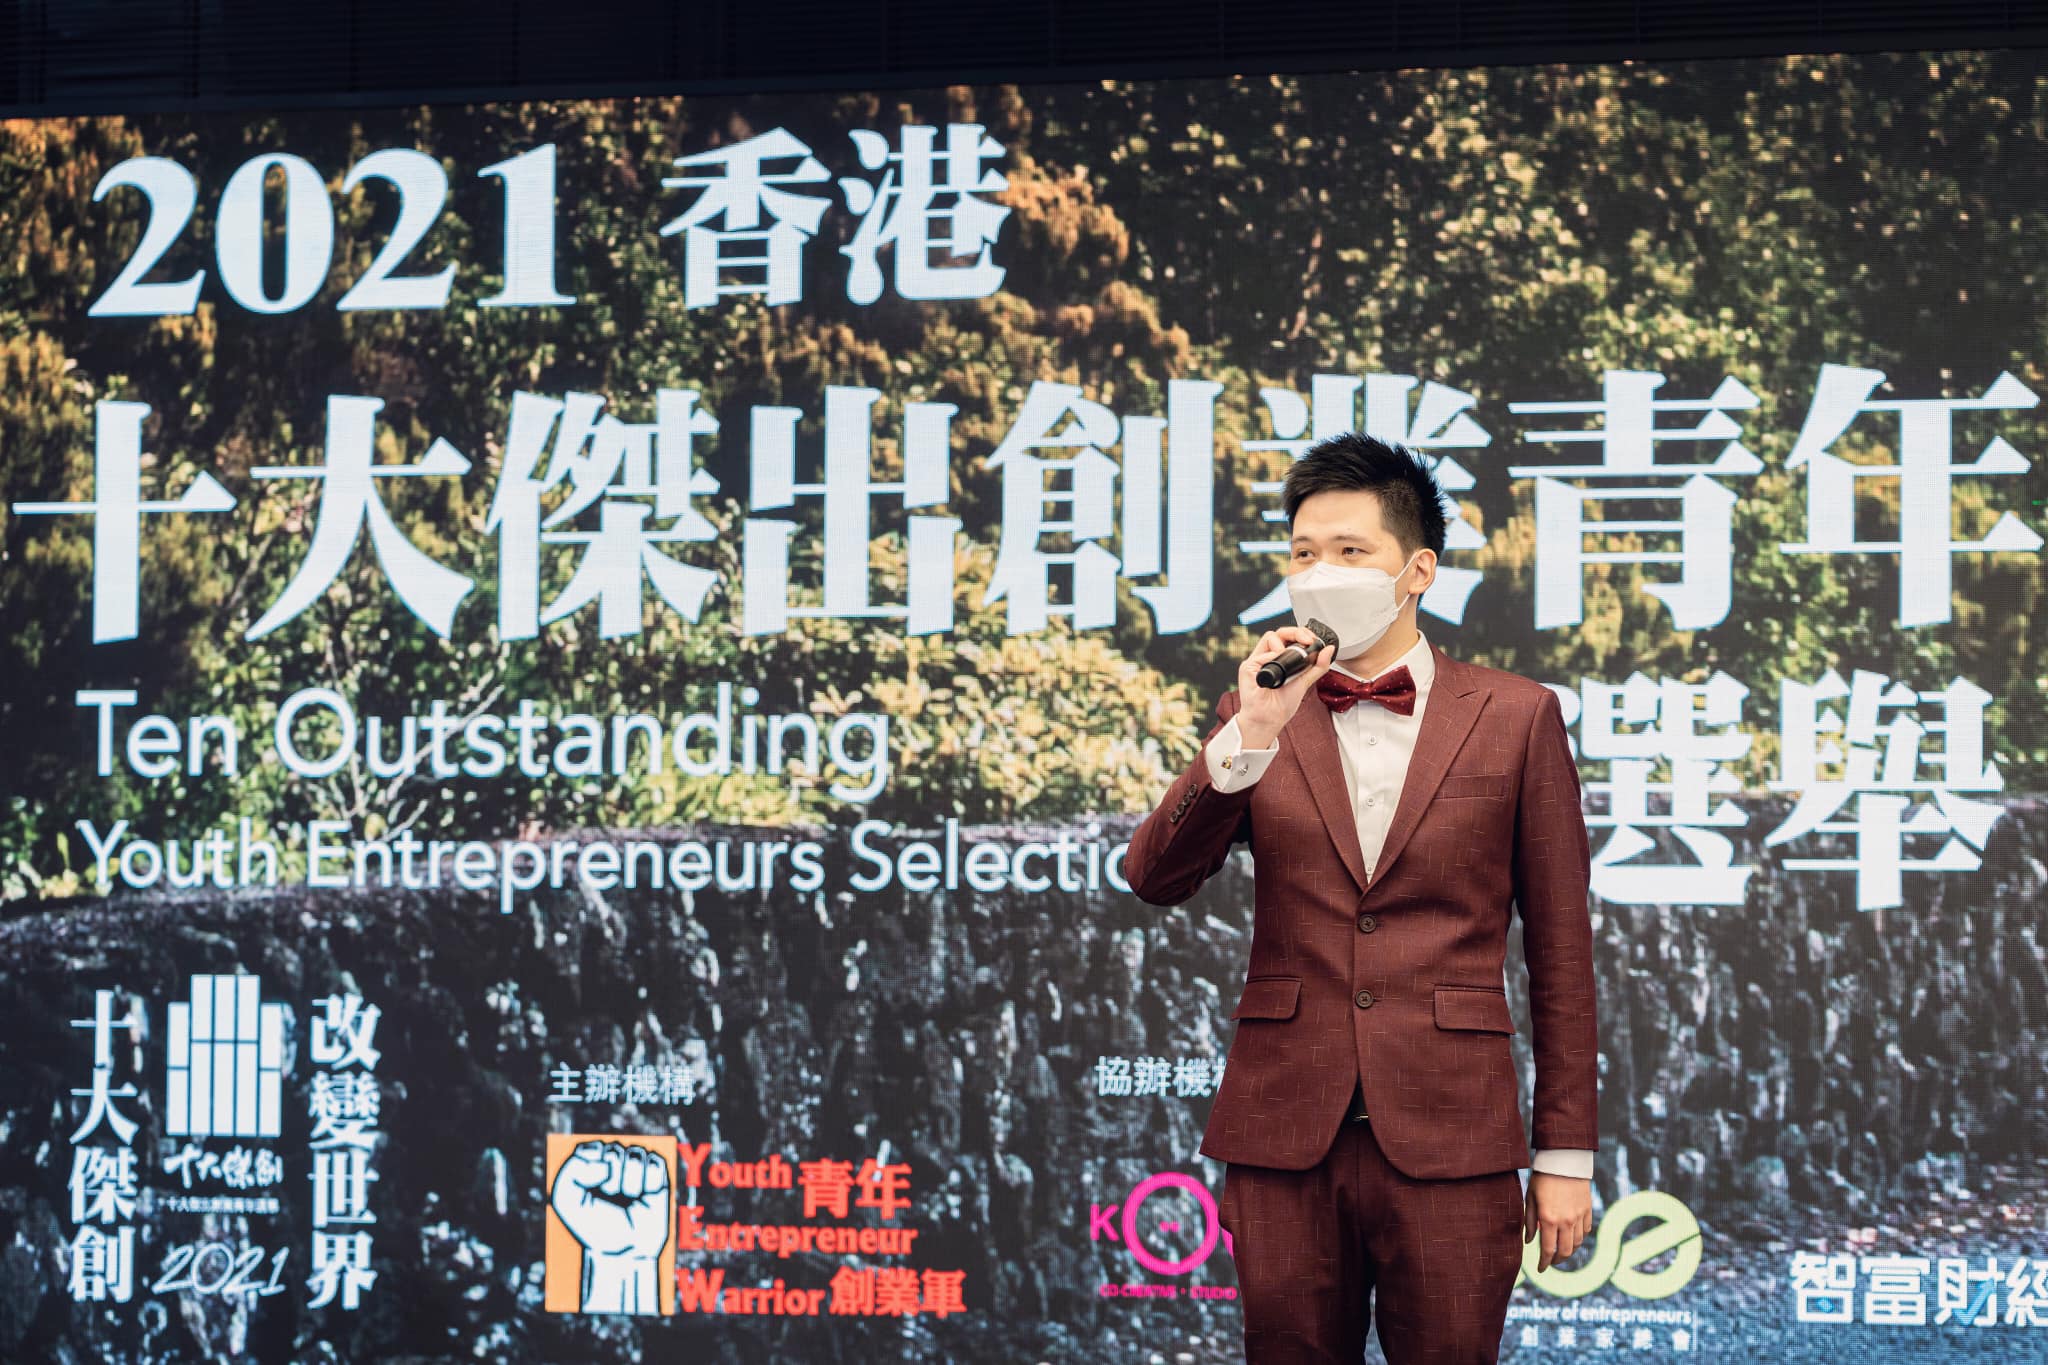 《香港十大傑出創業青年選舉》獎項創始人及青年創業軍創辦人溫學文